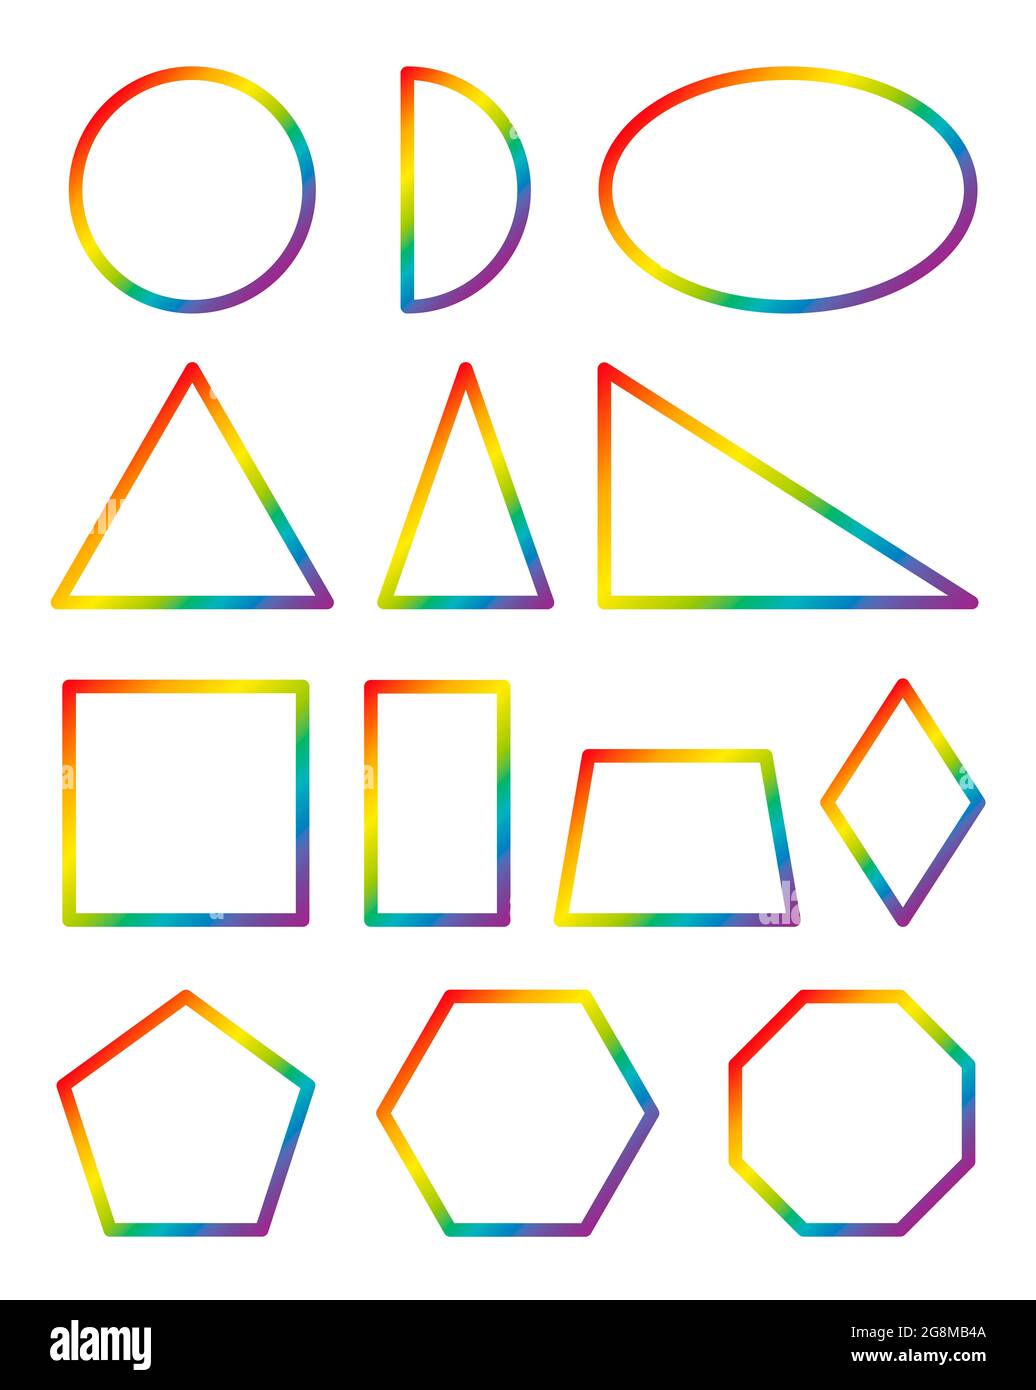 Geometrische Formen. Regenbogenfarbiger Kreis, Halbkreis, Ellipse, gleichseitig, gleichschenklig und rechtes Dreieck, Quadrat, Rechteck, Trapez, Raute. Stockfoto